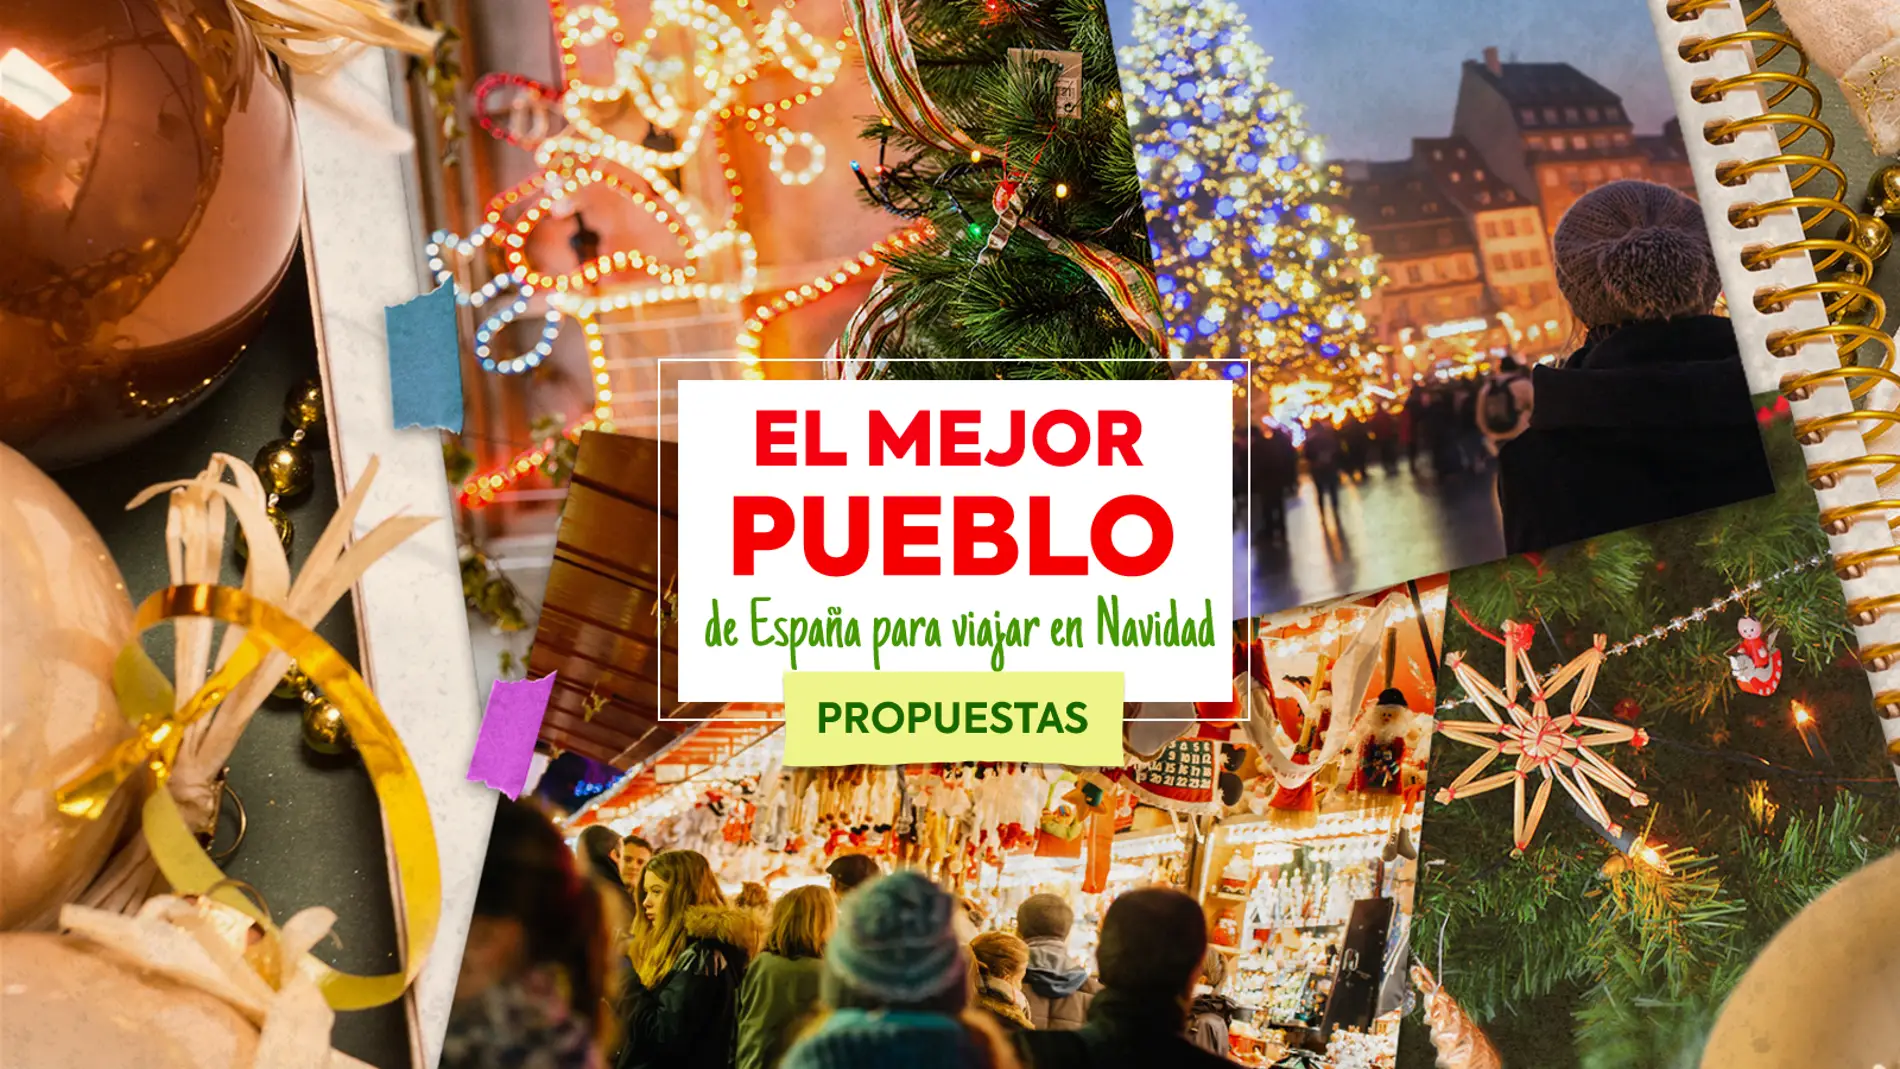 Propuestas del concurso el pueblo más bonito de España para visitar en Navidad